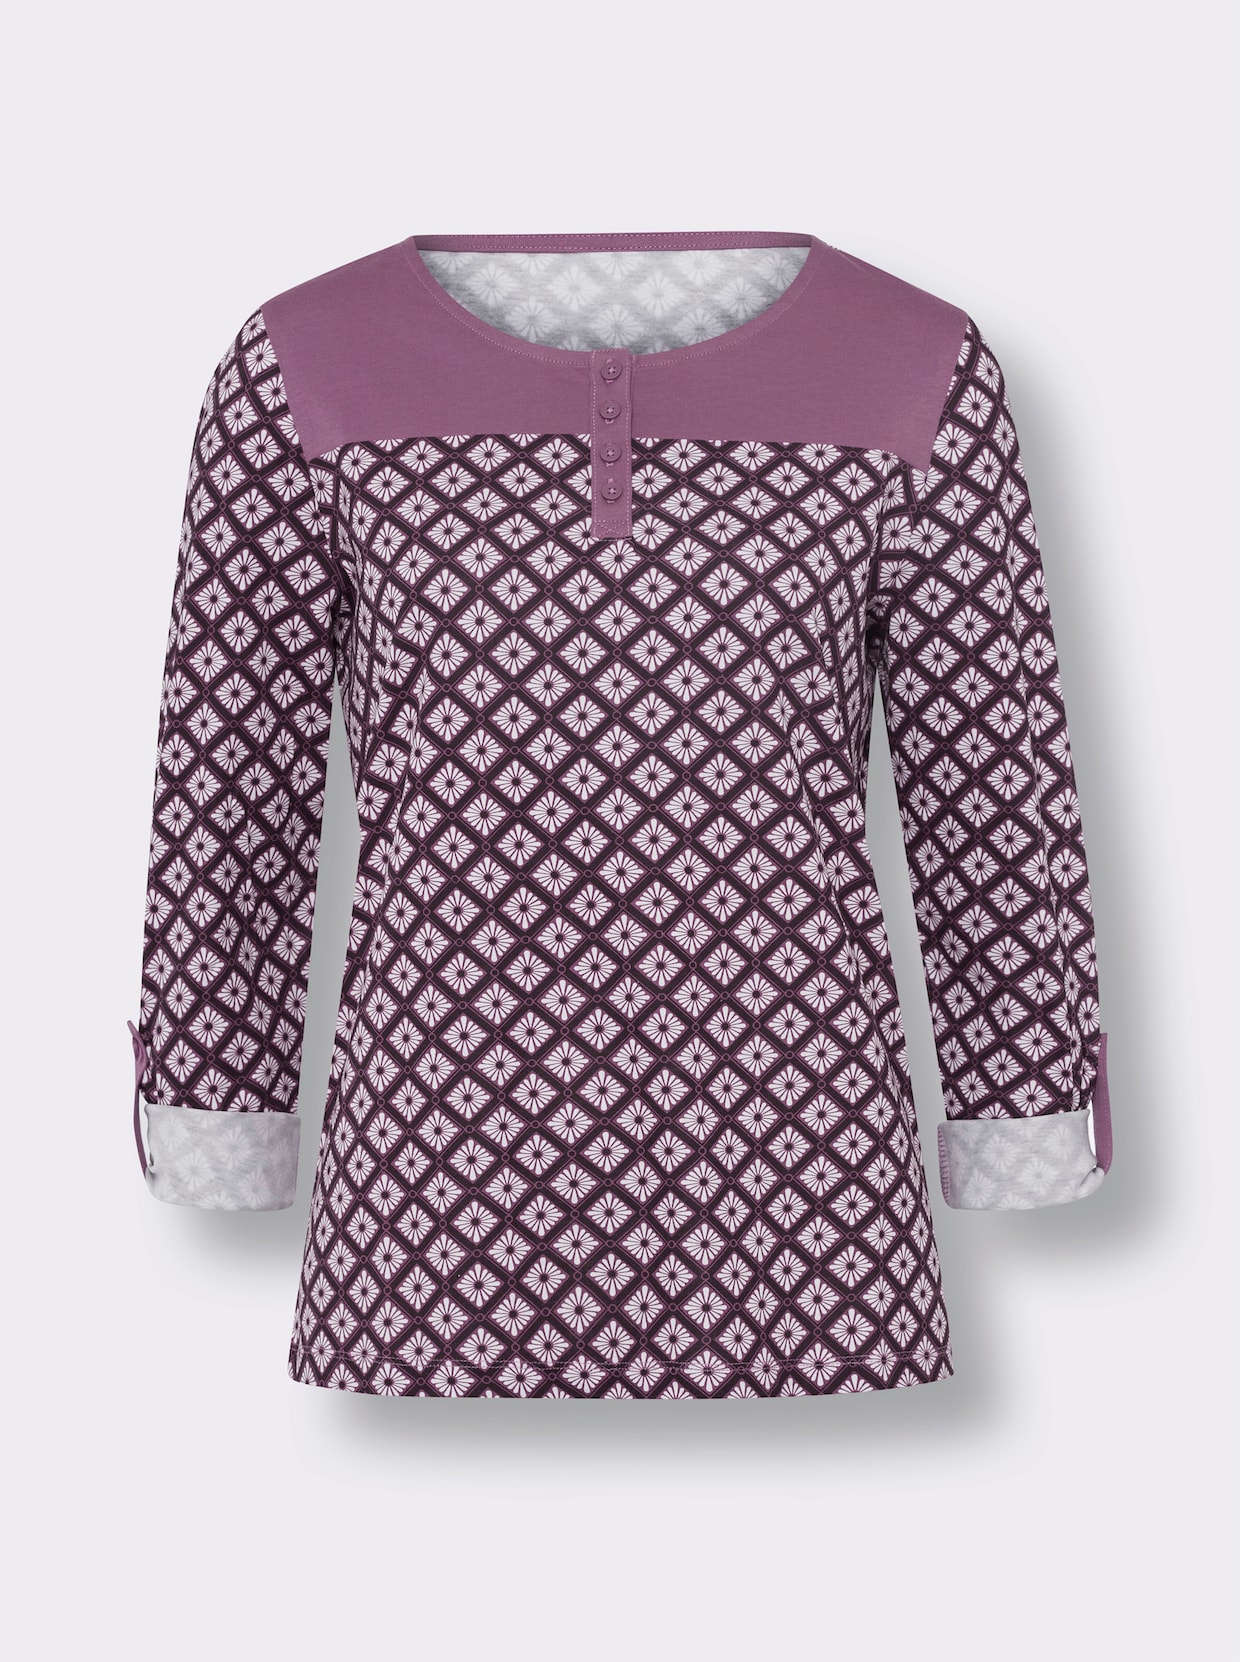 Tričko s kulatým výstřihem - fialová-bílá-potisk